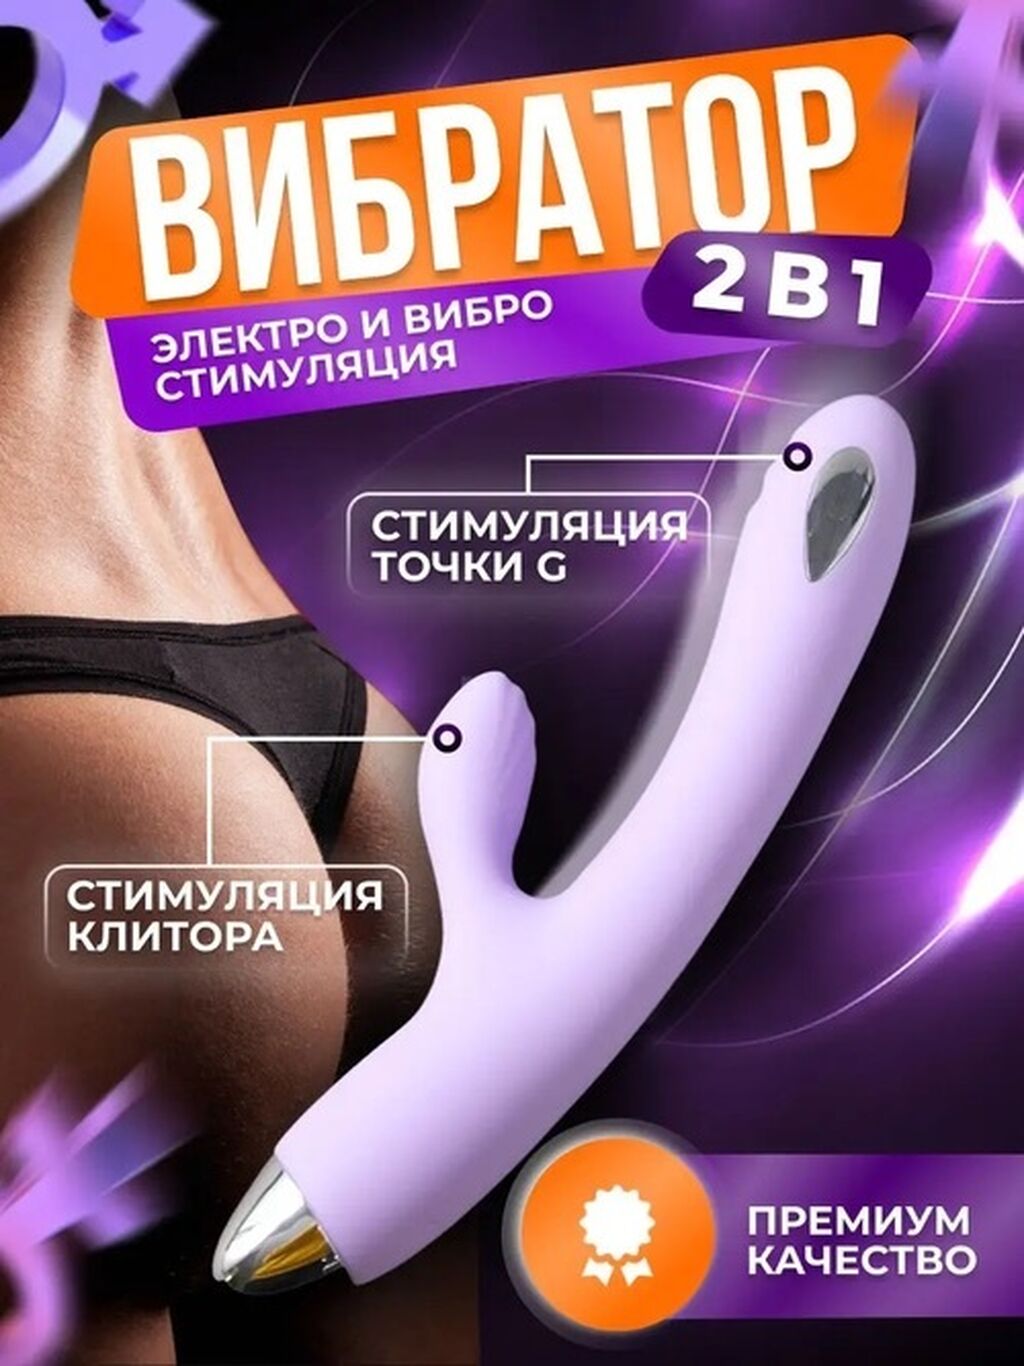 Все VIP проститутки Бишкека